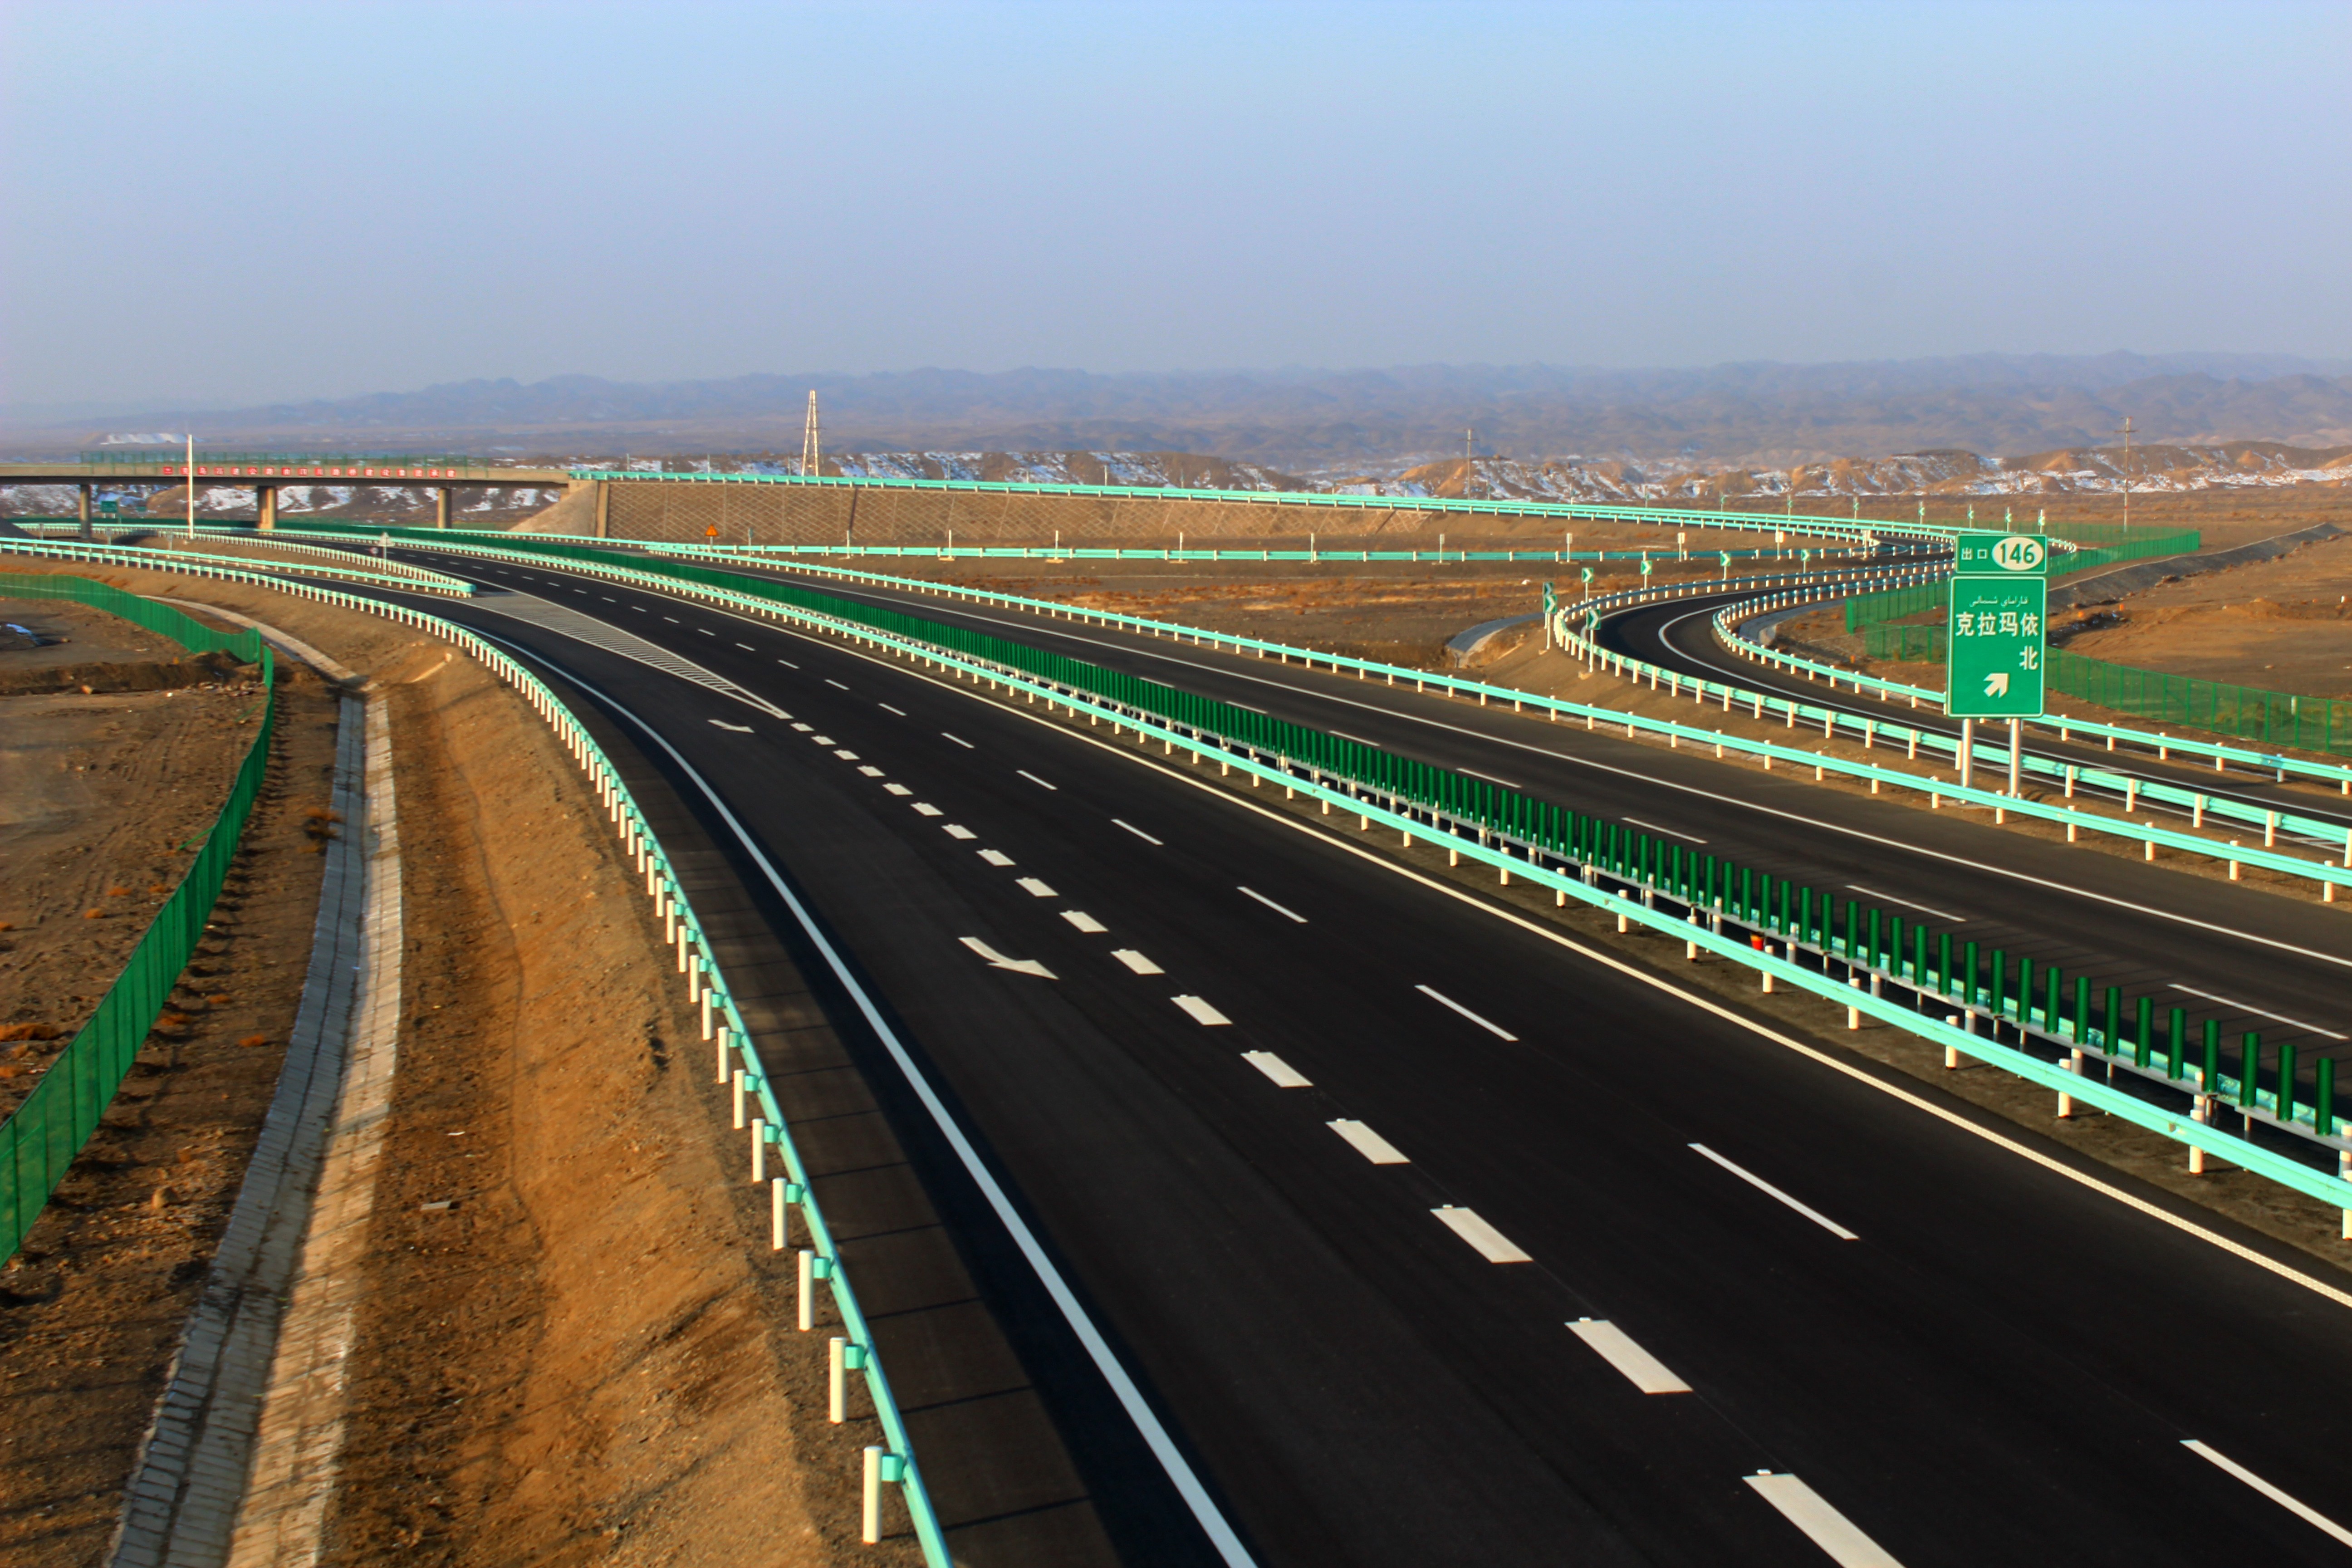 3新疆克拉玛依至乌尔禾高速公路，北疆地区与阿勒泰地区联系的重要干线，全长139公里，2013年12月建成通车。穿越戈壁、荒漠等复杂地址，获得国家优质工程奖。.jpg